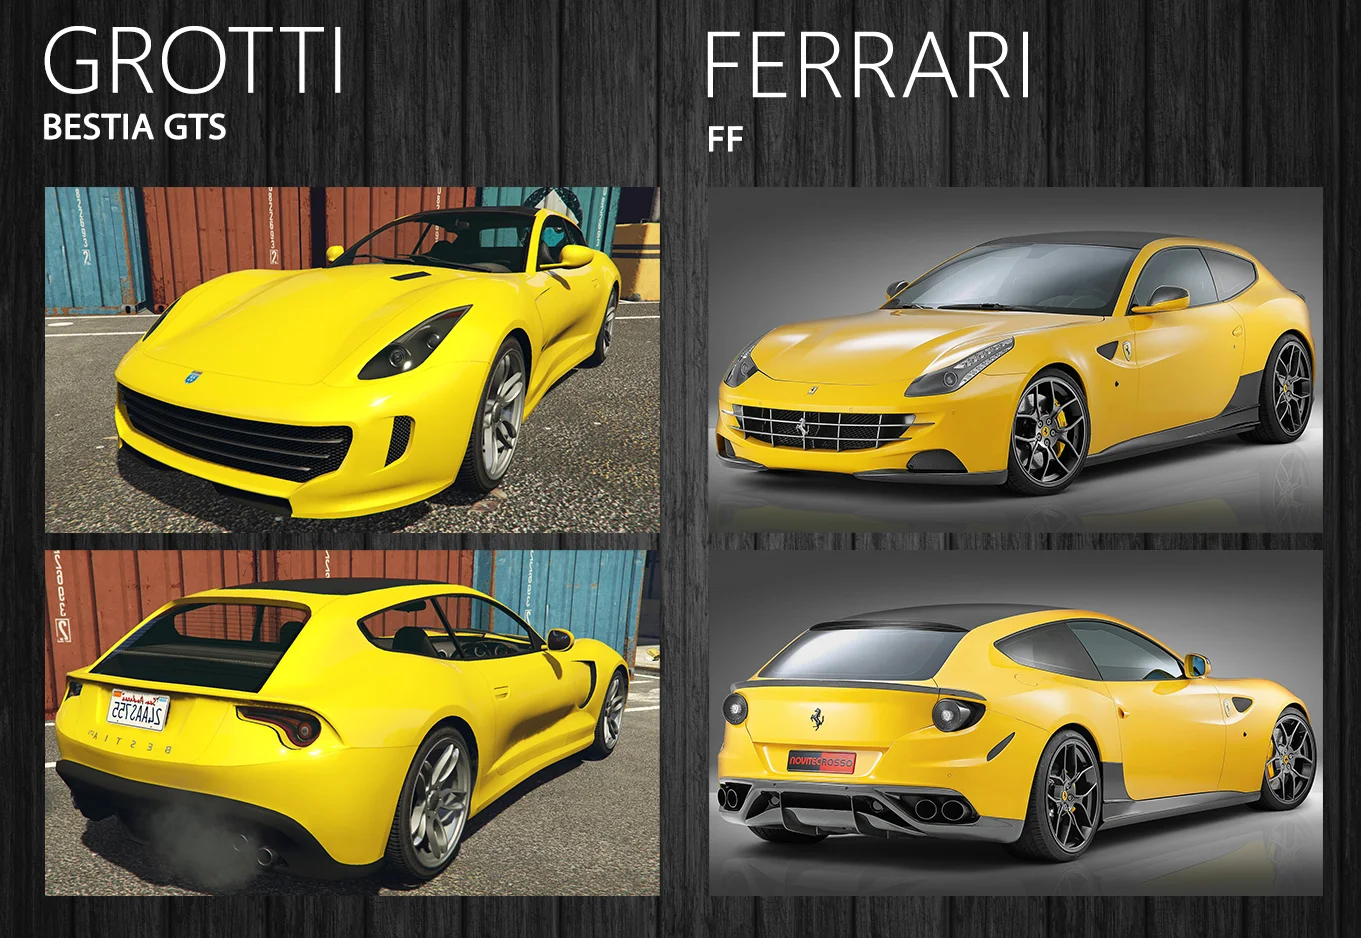 Не обойтись без итальянских спорткаров. Например, универсала [Ferrari FF](https://ru.motor1.com/ferrari/).